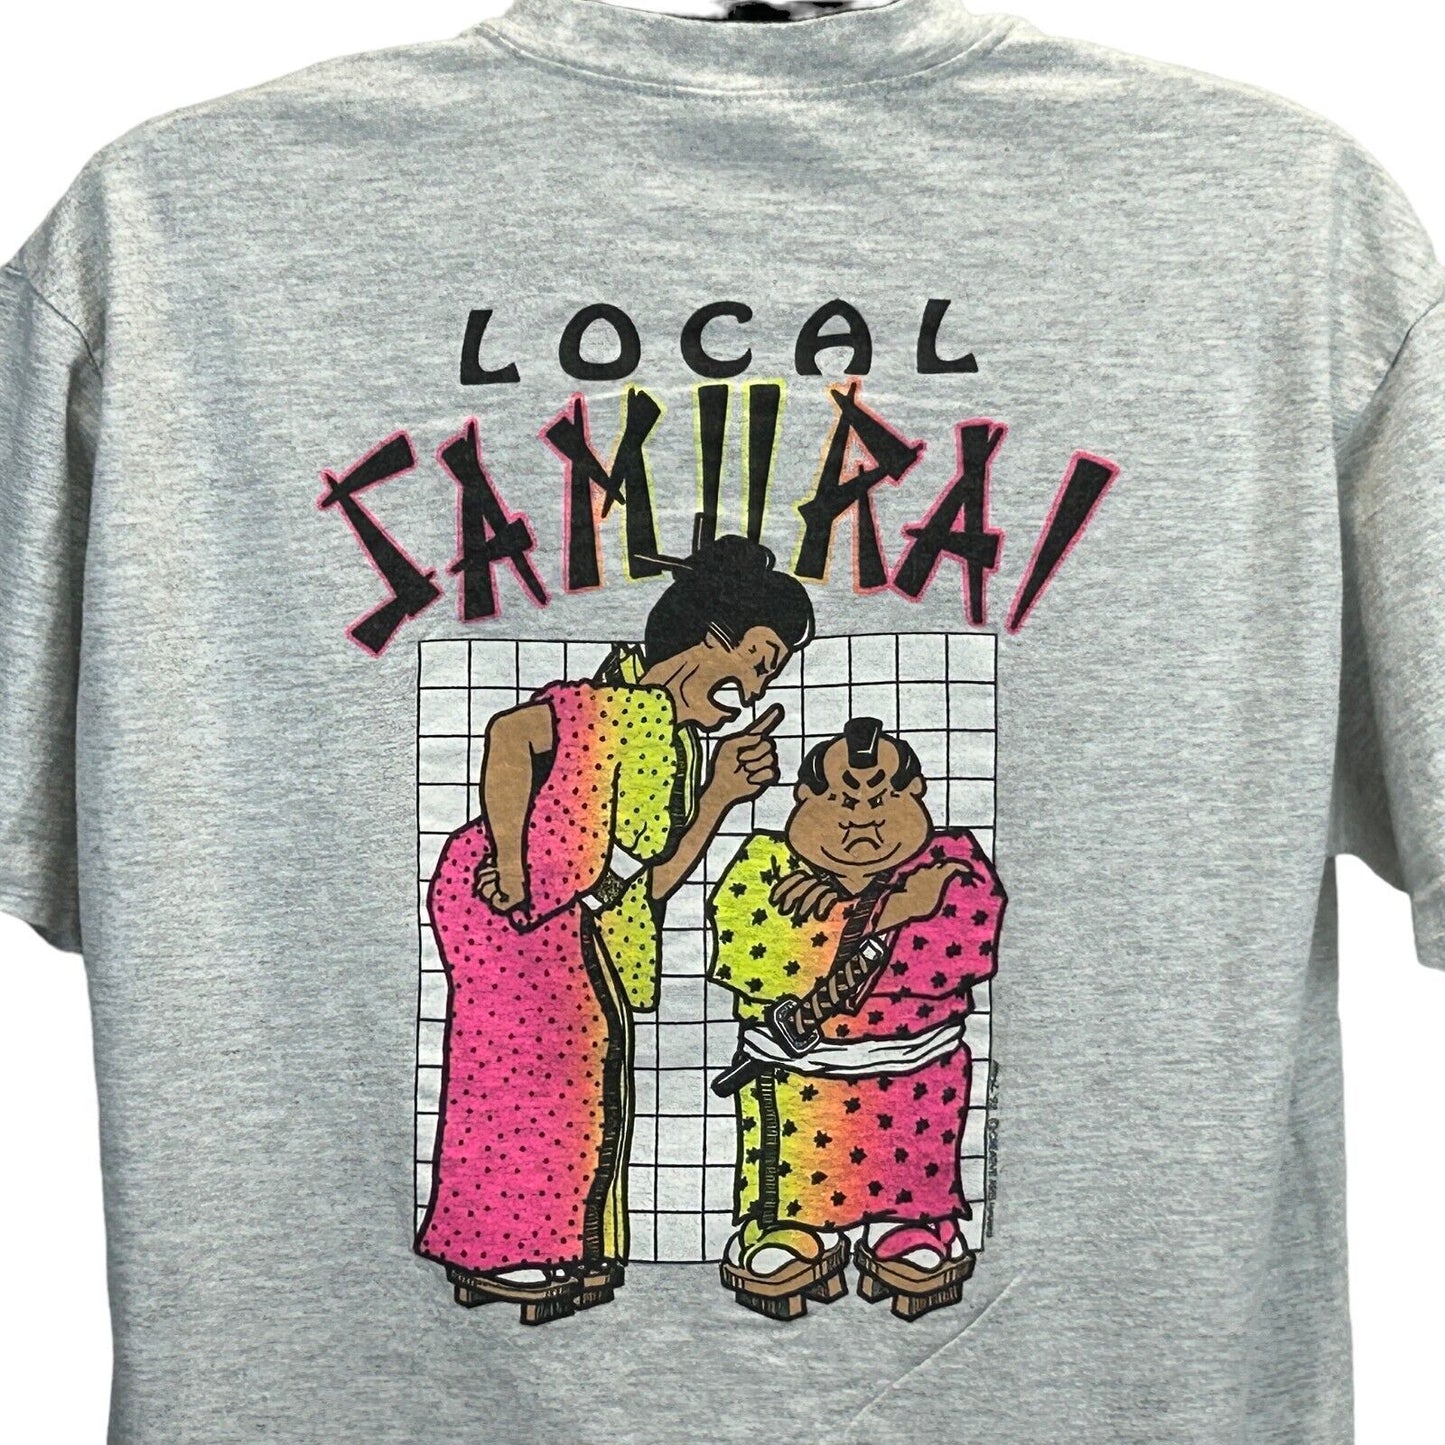 Local Samurai Hawaii Vintage 90s T Shirt Hawaiian Creative Arts Made In USA XL